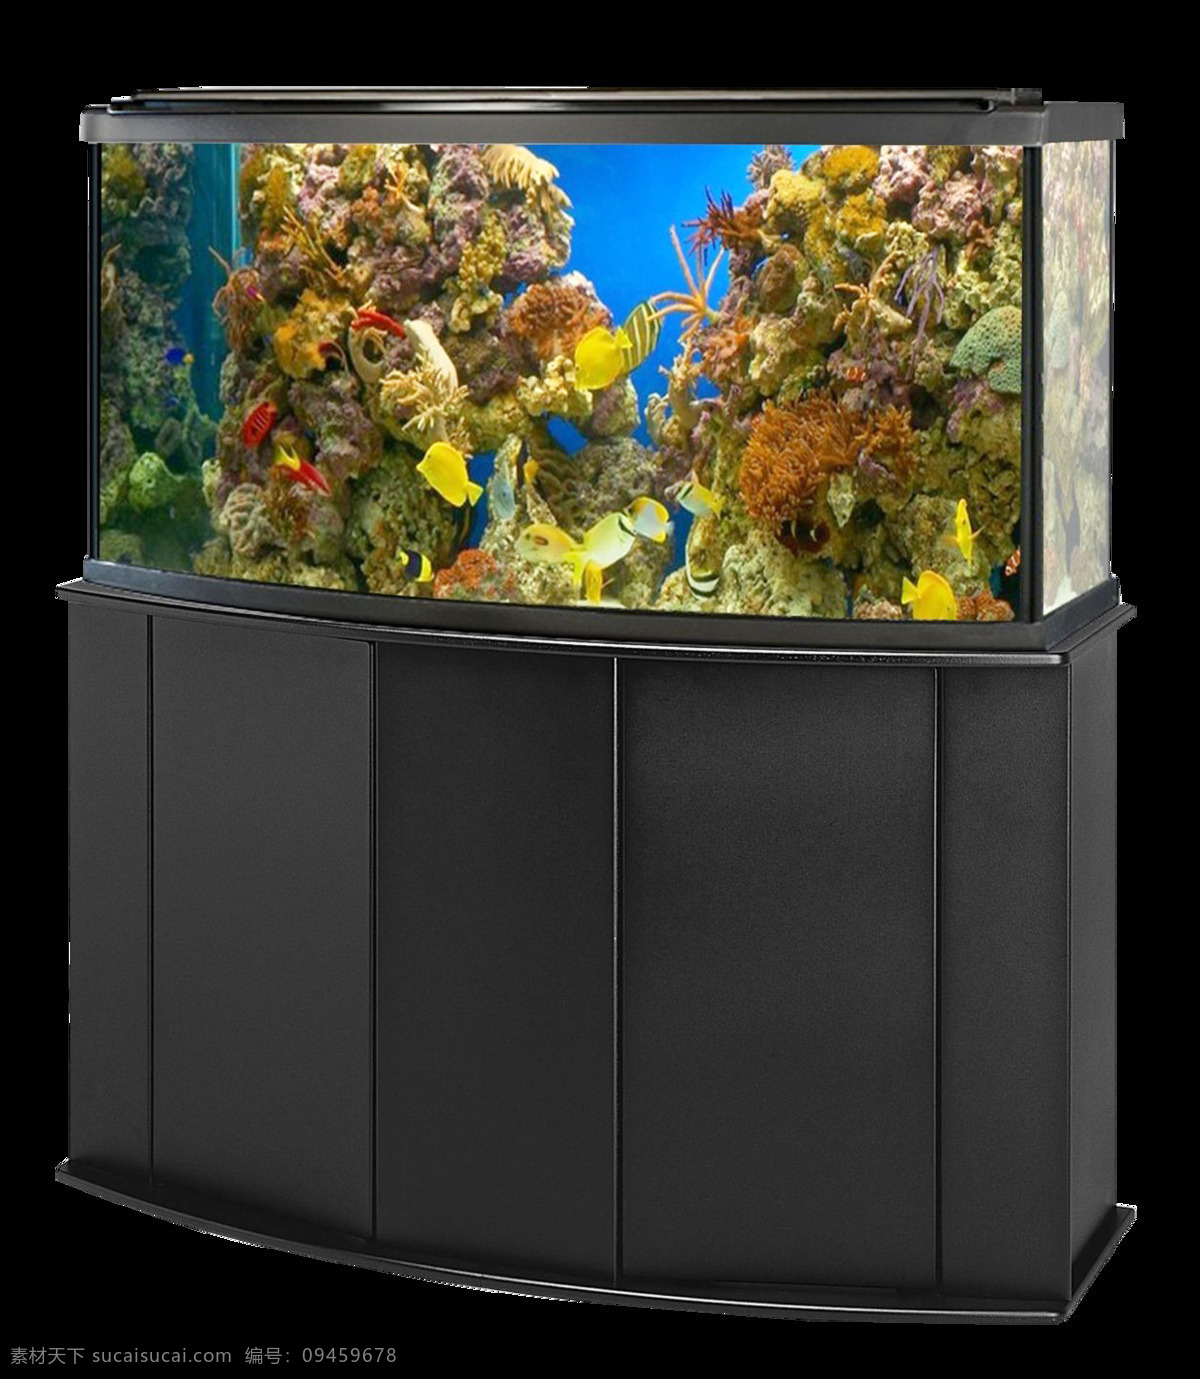 海洋馆 珊瑚礁 海底世界 海洋世界 水族馆世界 海洋公园 水下摄影 海洋生物 珊瑚礁鱼群 水 鱼 海洋 水下 插图 动物 卡通 装饰